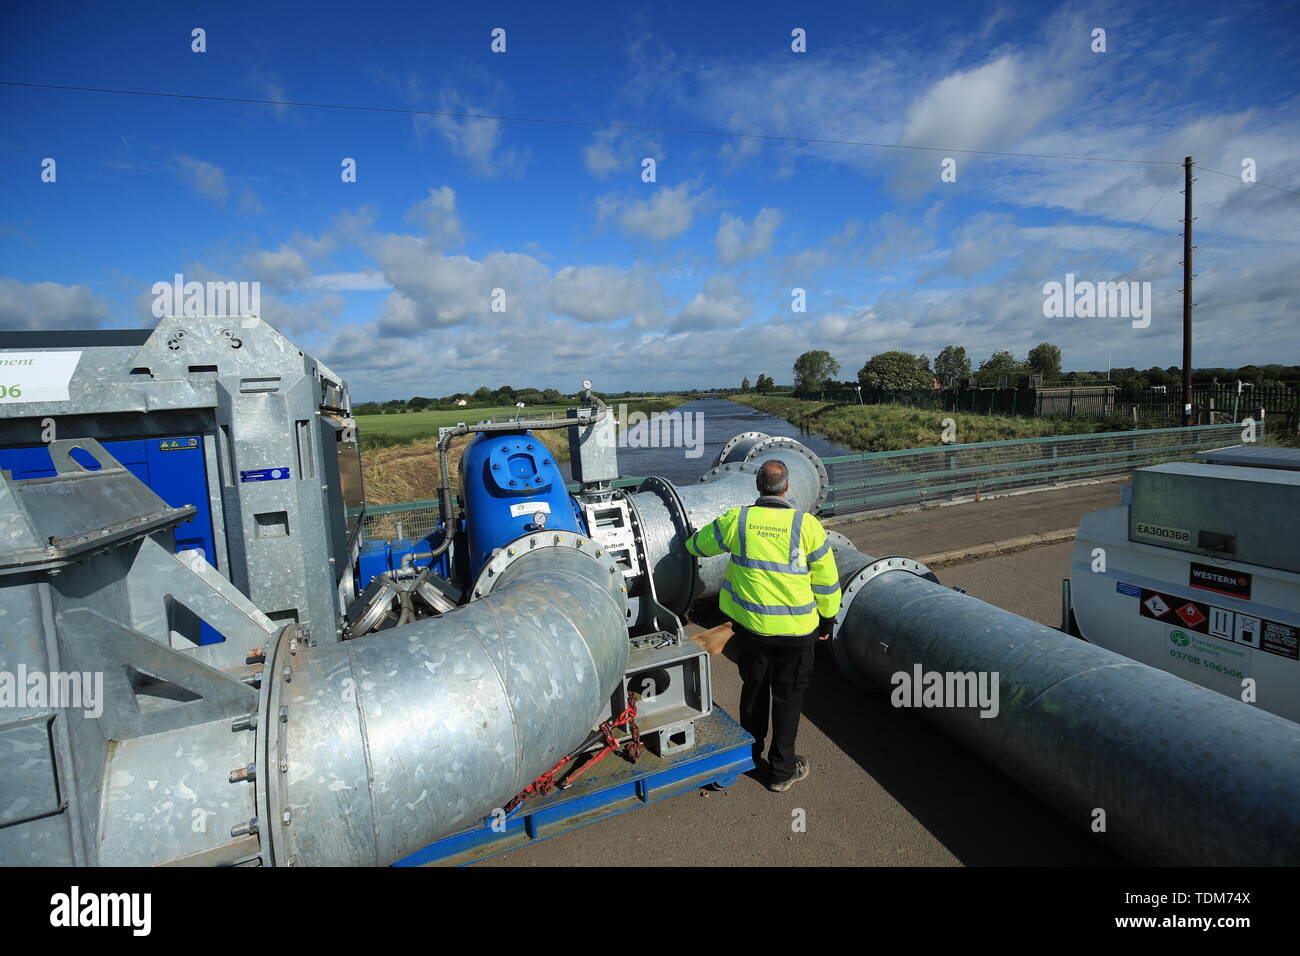 Pompes à haut débit sont utilisés pour pomper l'eau d'inondation dans la rivière de trempage dans le Lincolnshire, où rues et propriétés inondée après la commune comptait plus de deux mois de pluie en seulement deux jours. Banque D'Images